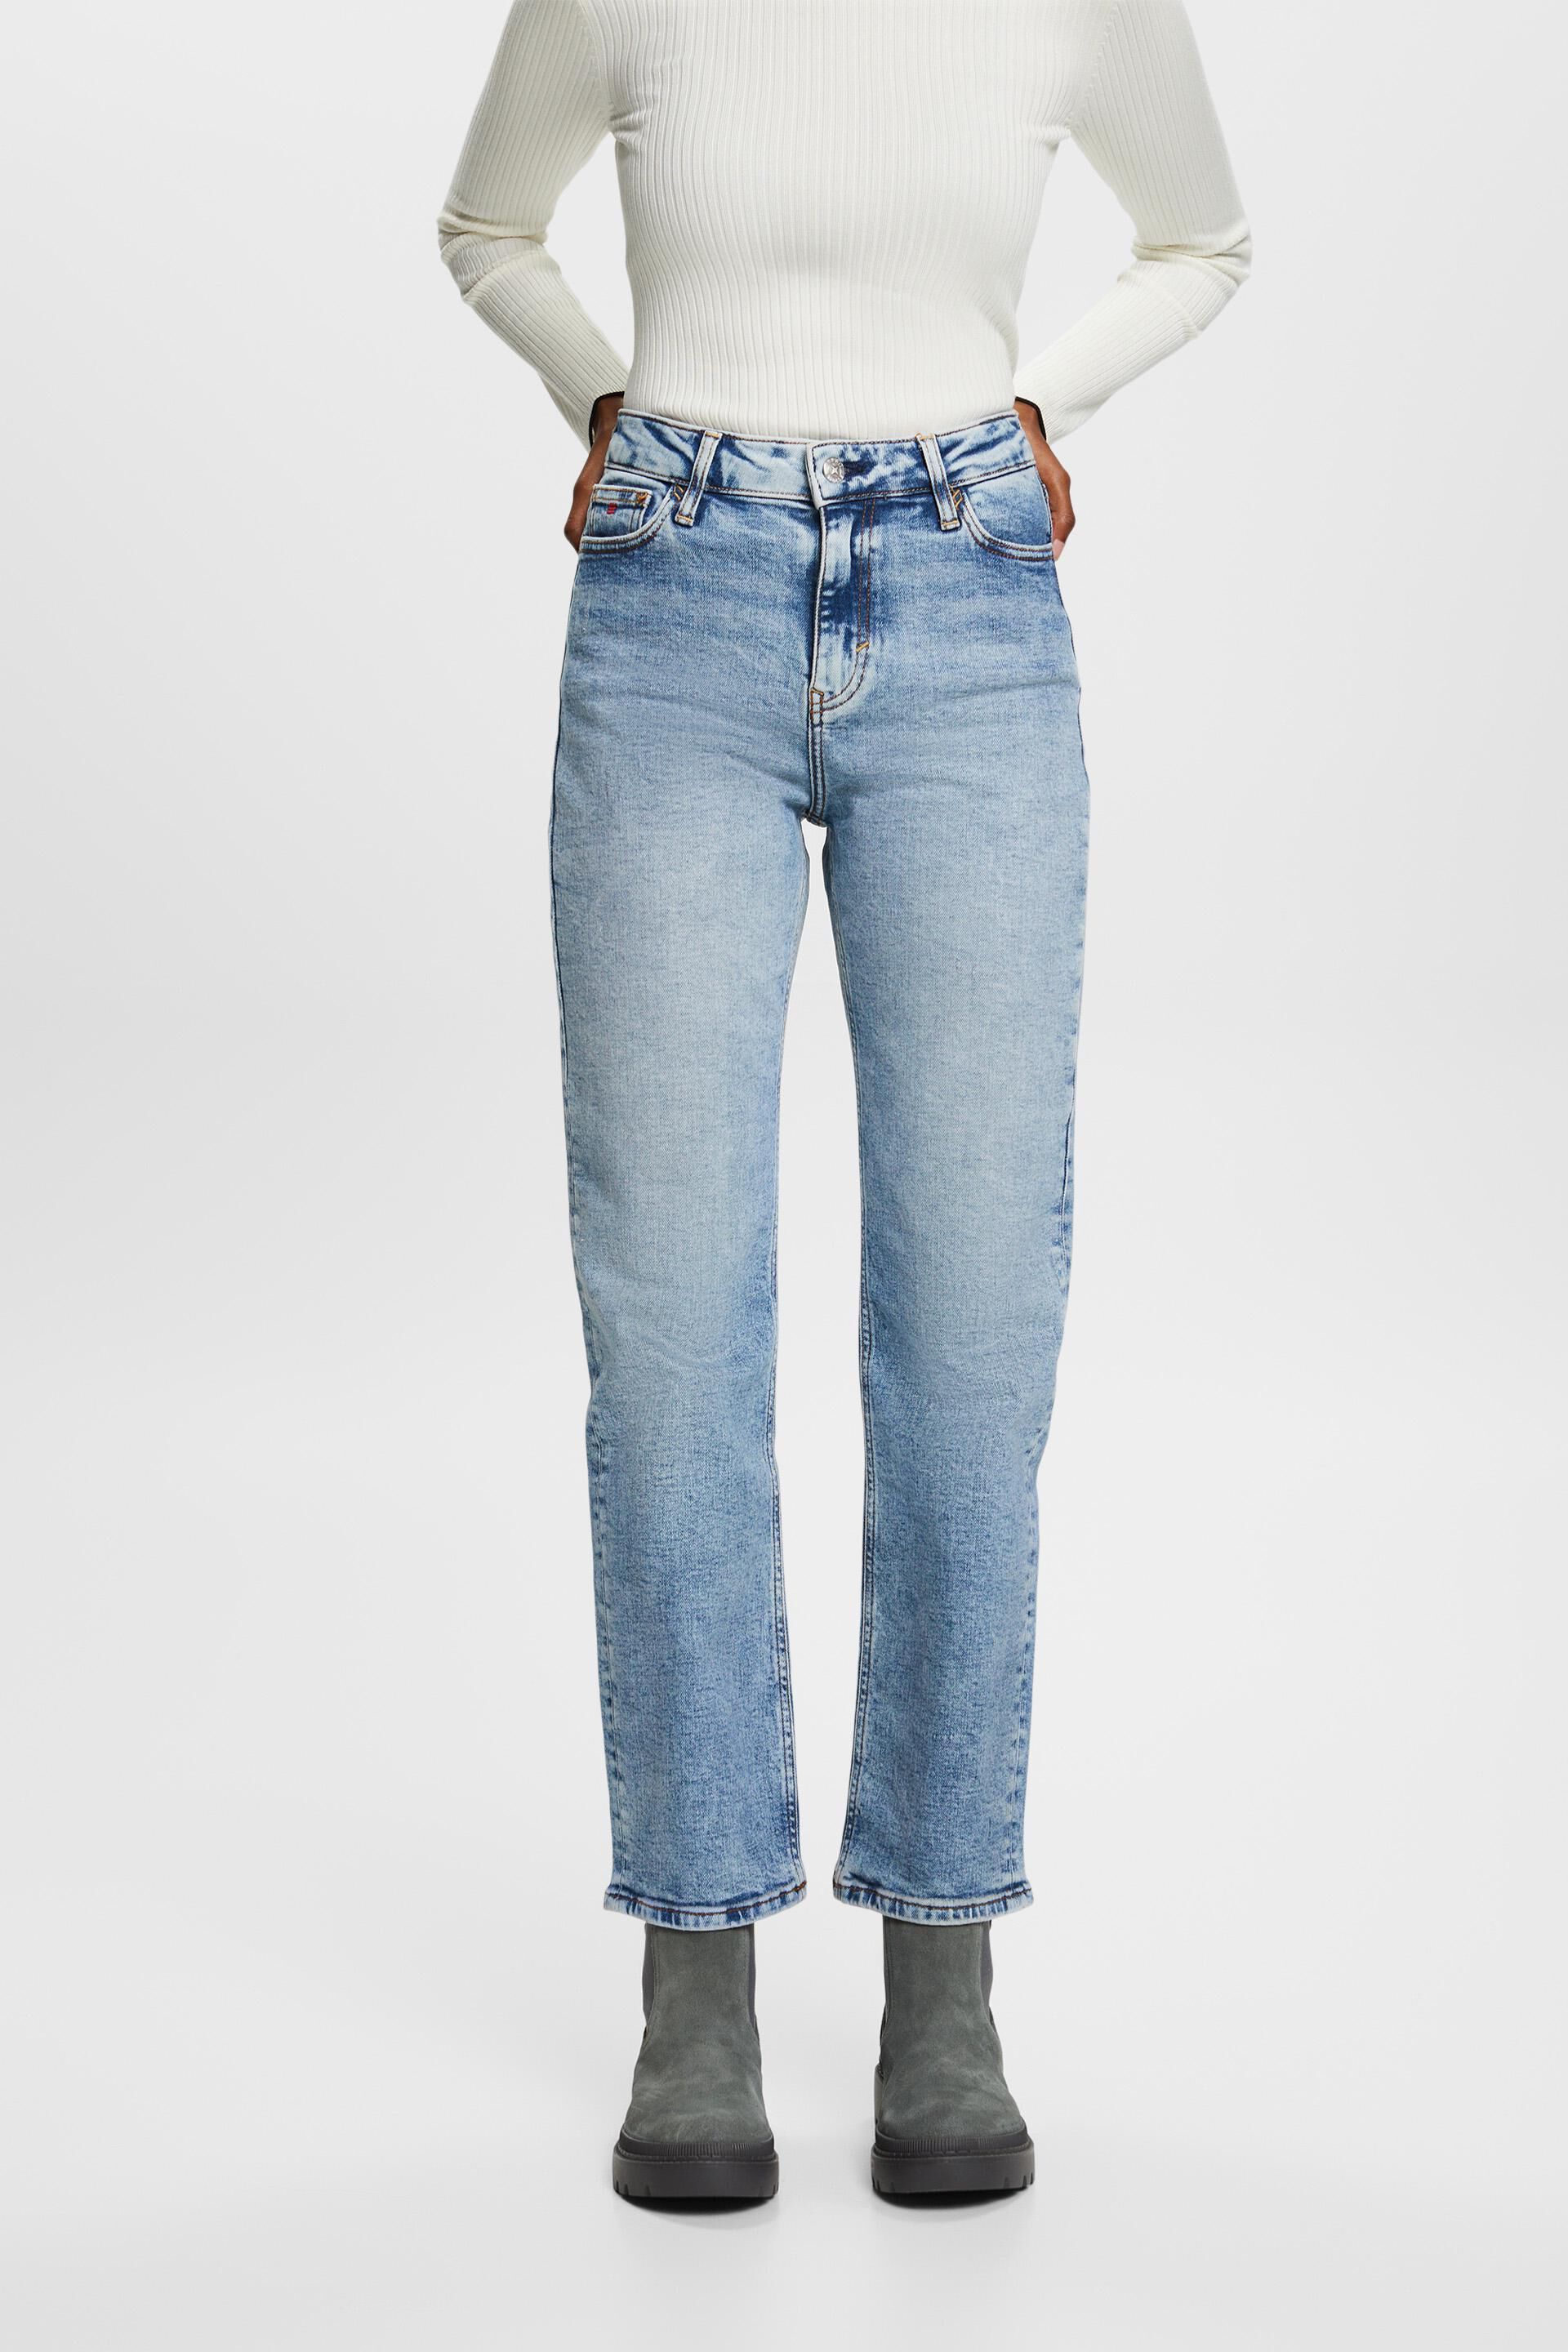 Esprit Damen Premium retro straight jeans